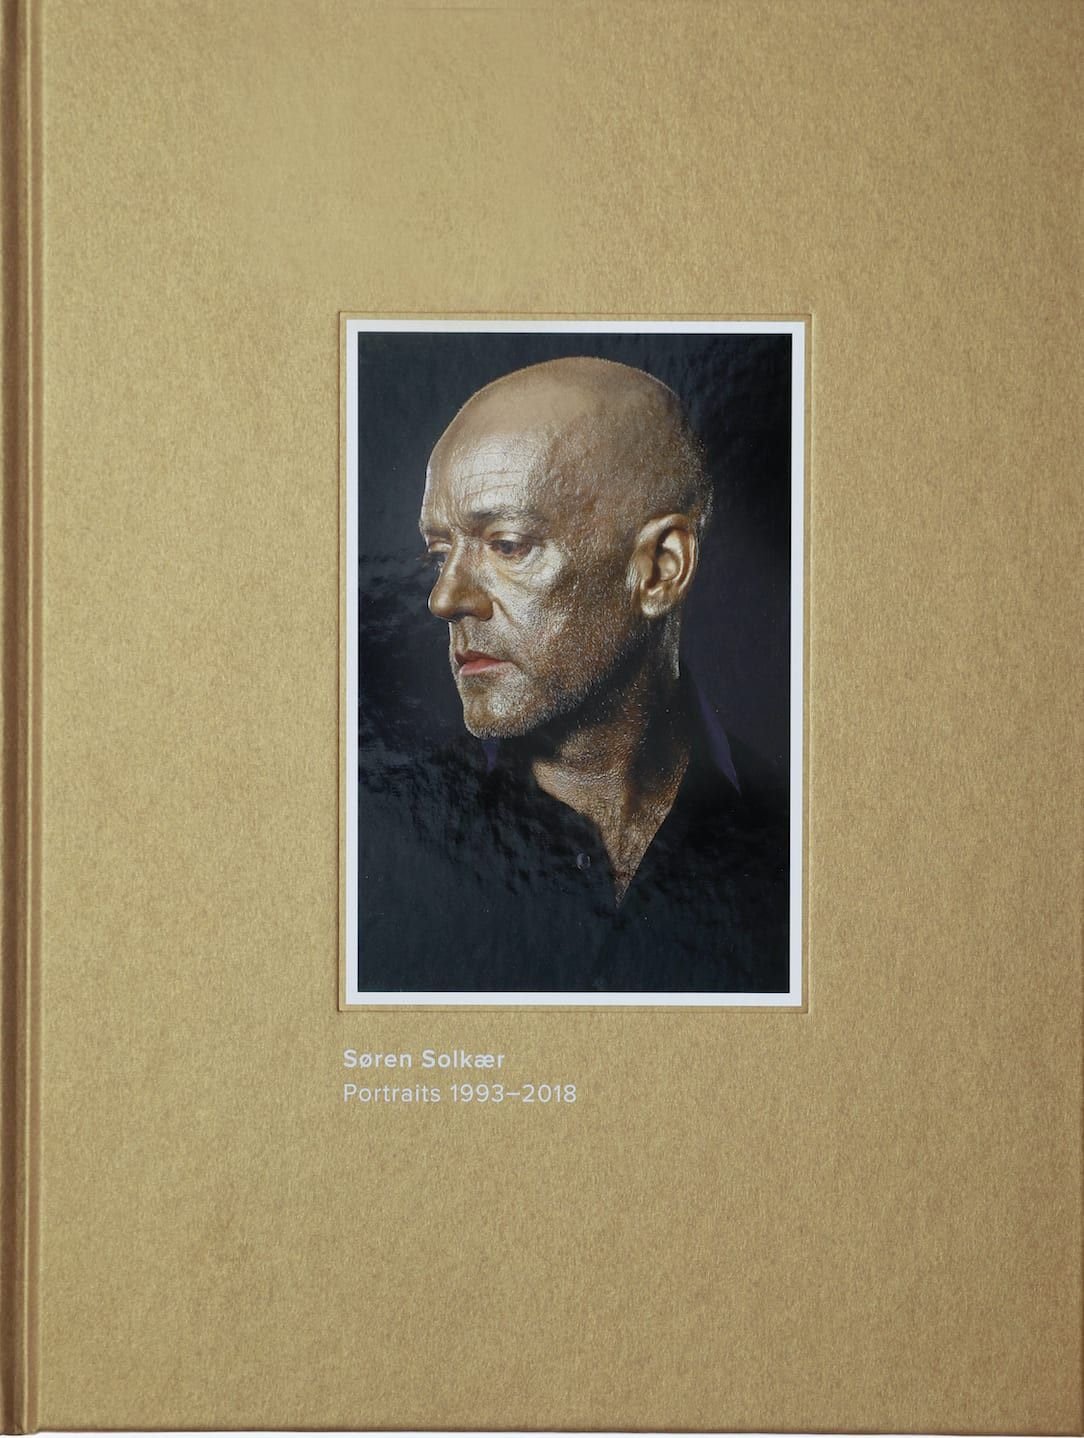 Portraits 1993-2018 - Søren Solkær